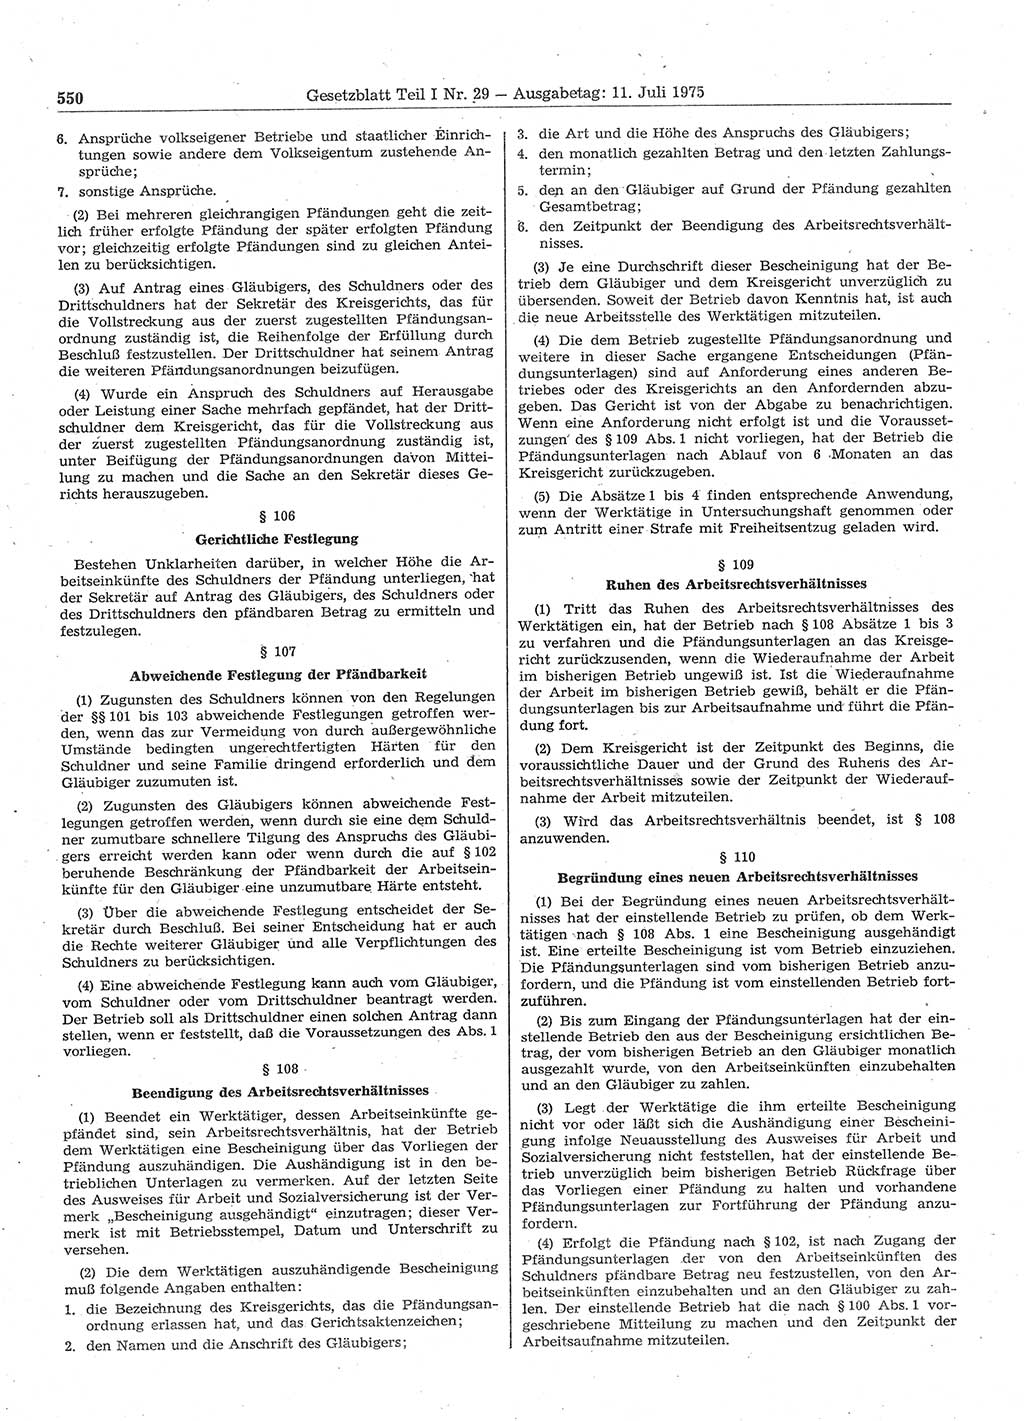 Gesetzblatt (GBl.) der Deutschen Demokratischen Republik (DDR) Teil Ⅰ 1975, Seite 550 (GBl. DDR Ⅰ 1975, S. 550)